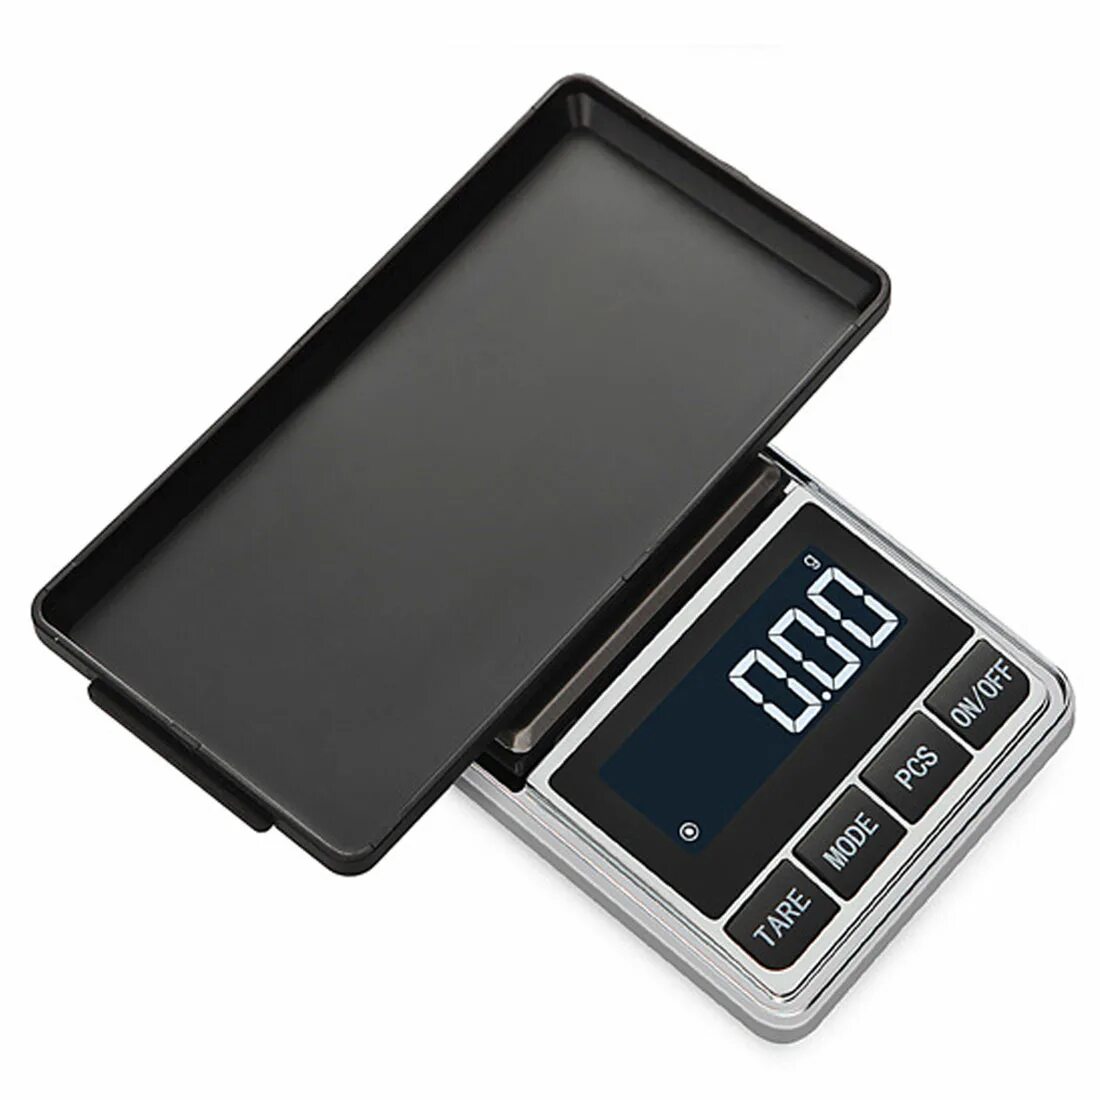 Весы электронные карманные CHANGXIE 500g. Весы 100 граммовые электронные Digital Scale. Digital Scale весы 500г. Ювелирные суперточные весы Mini Digital Scale (0,001-30 гр.). Купить мини весы